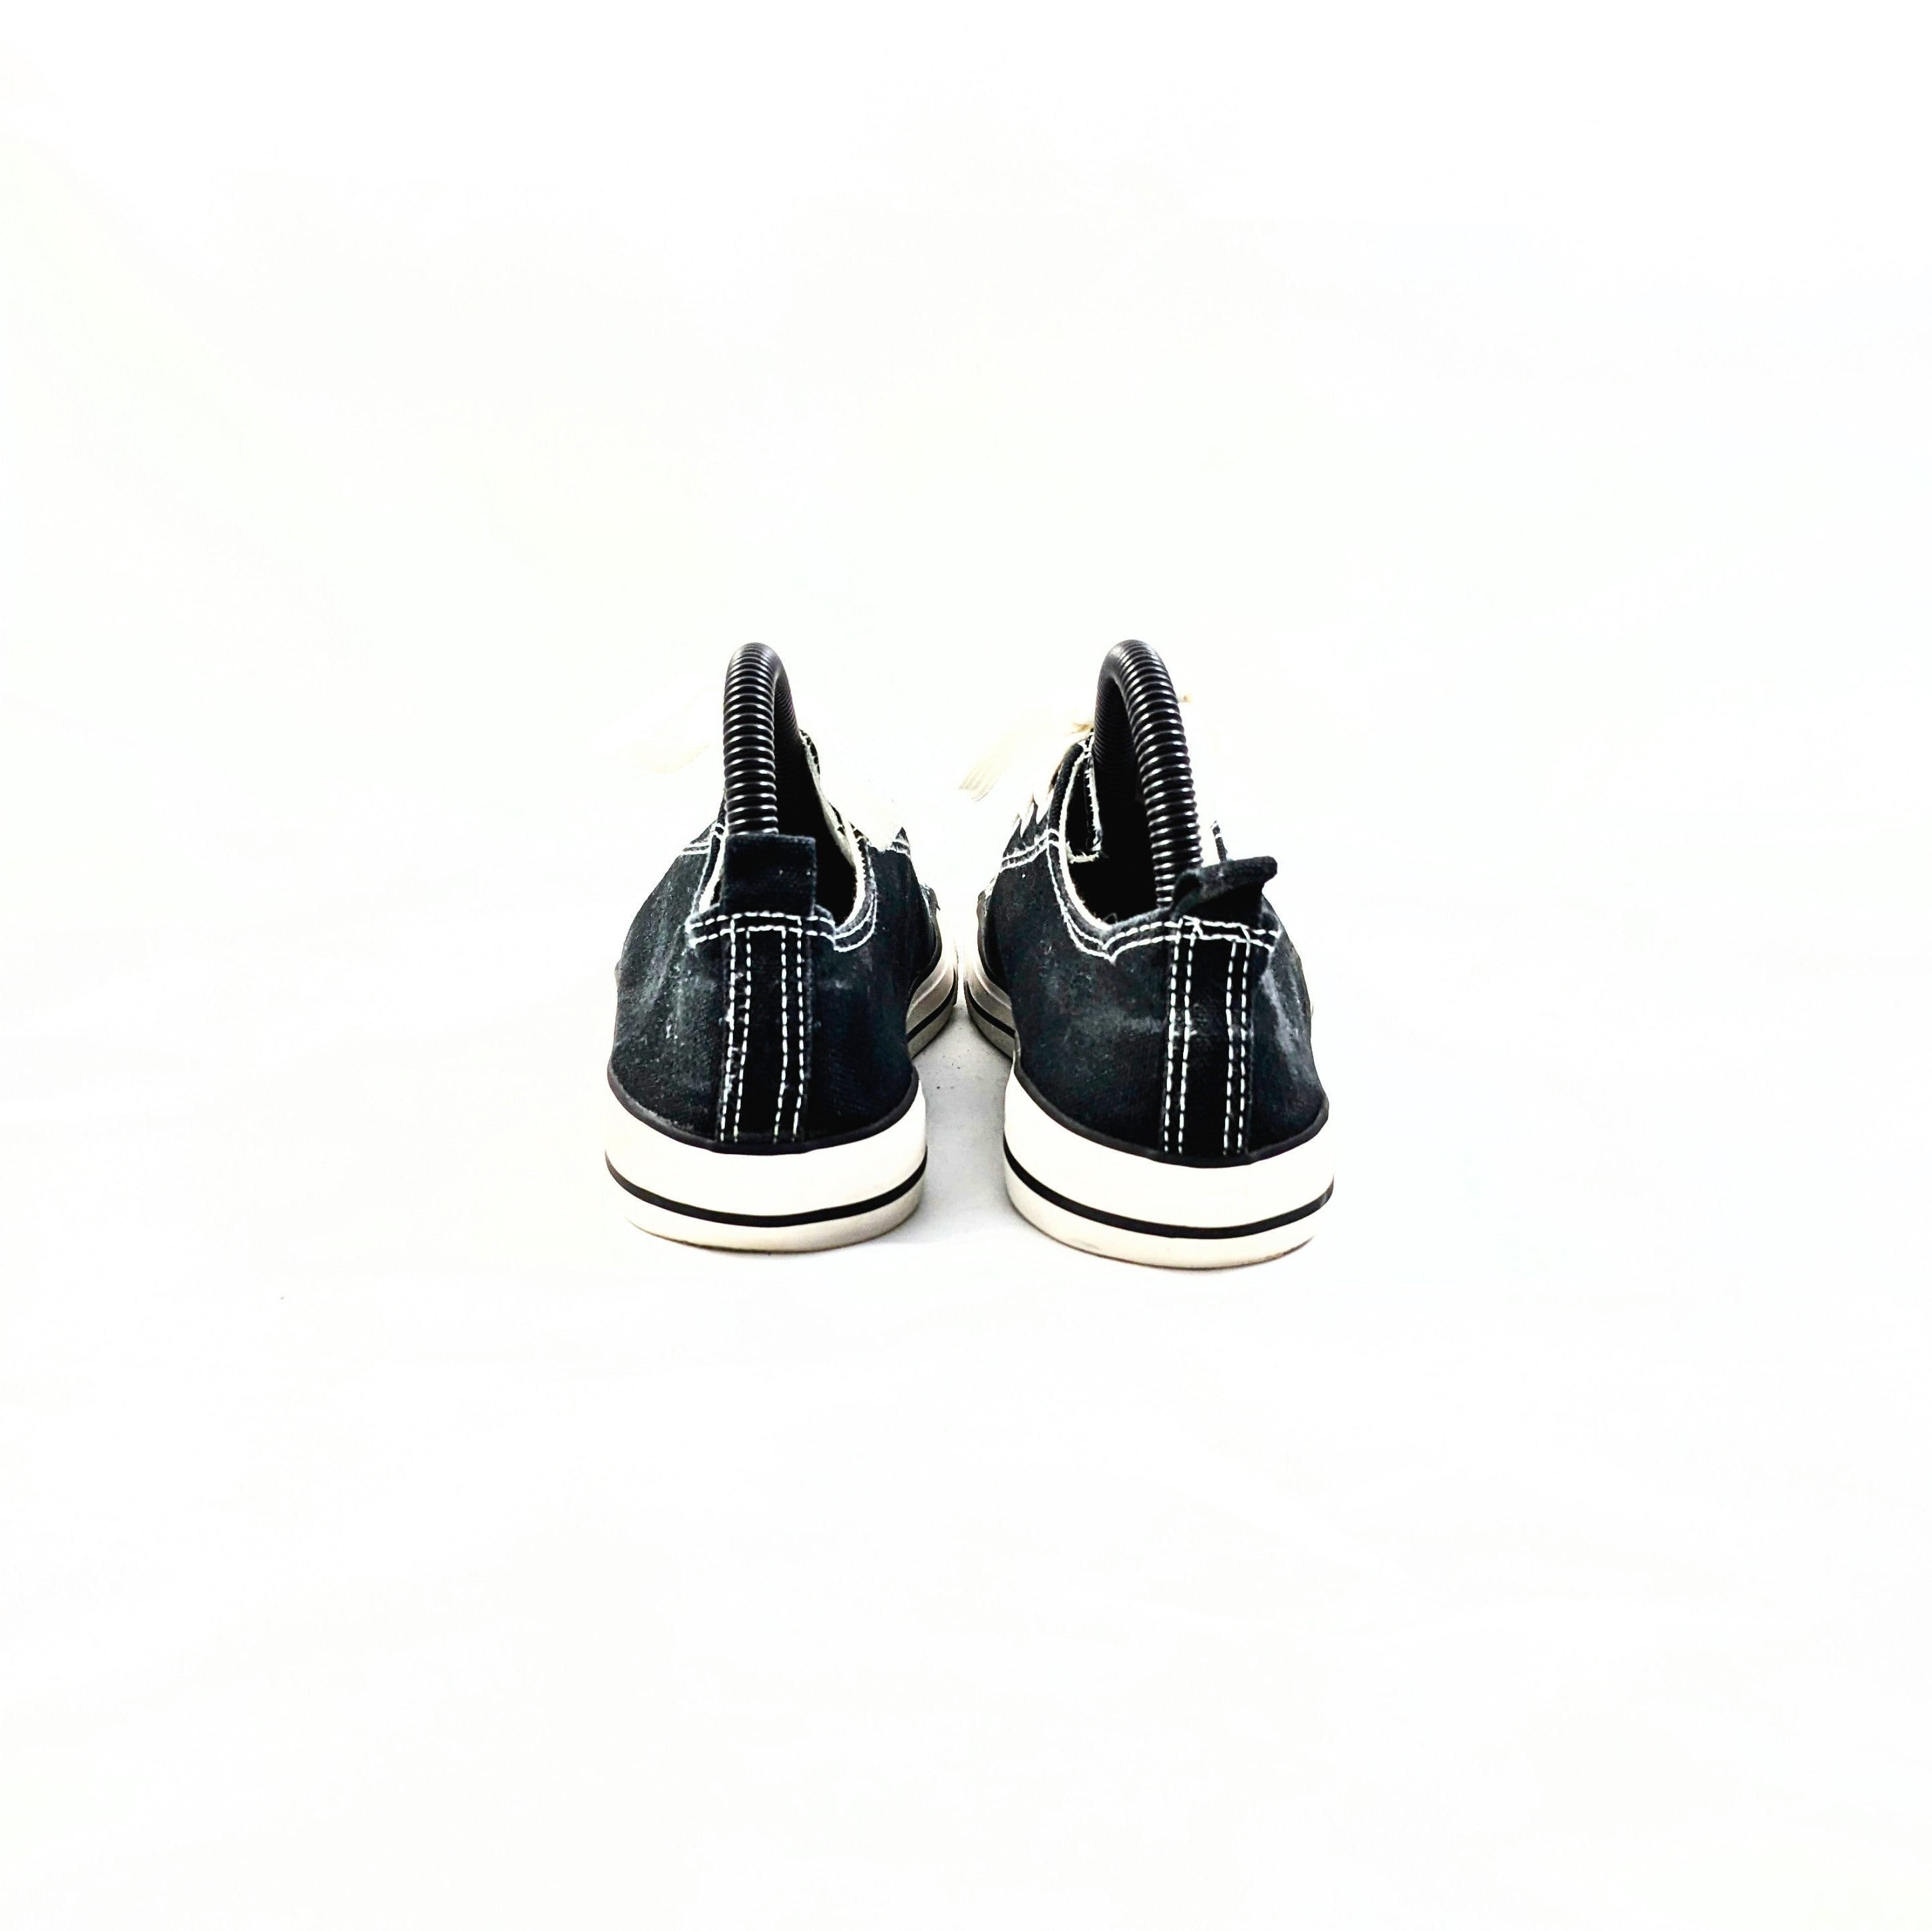 حذاء رياضي أسود من Rue21